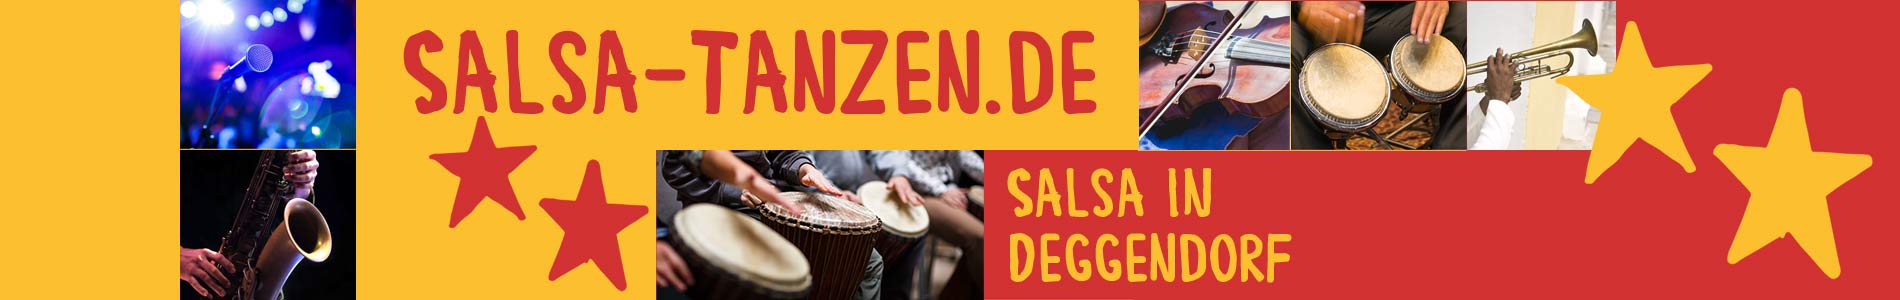 Salsa in Deggendorf – Salsa lernen und tanzen, Tanzkurse, Partys, Veranstaltungen